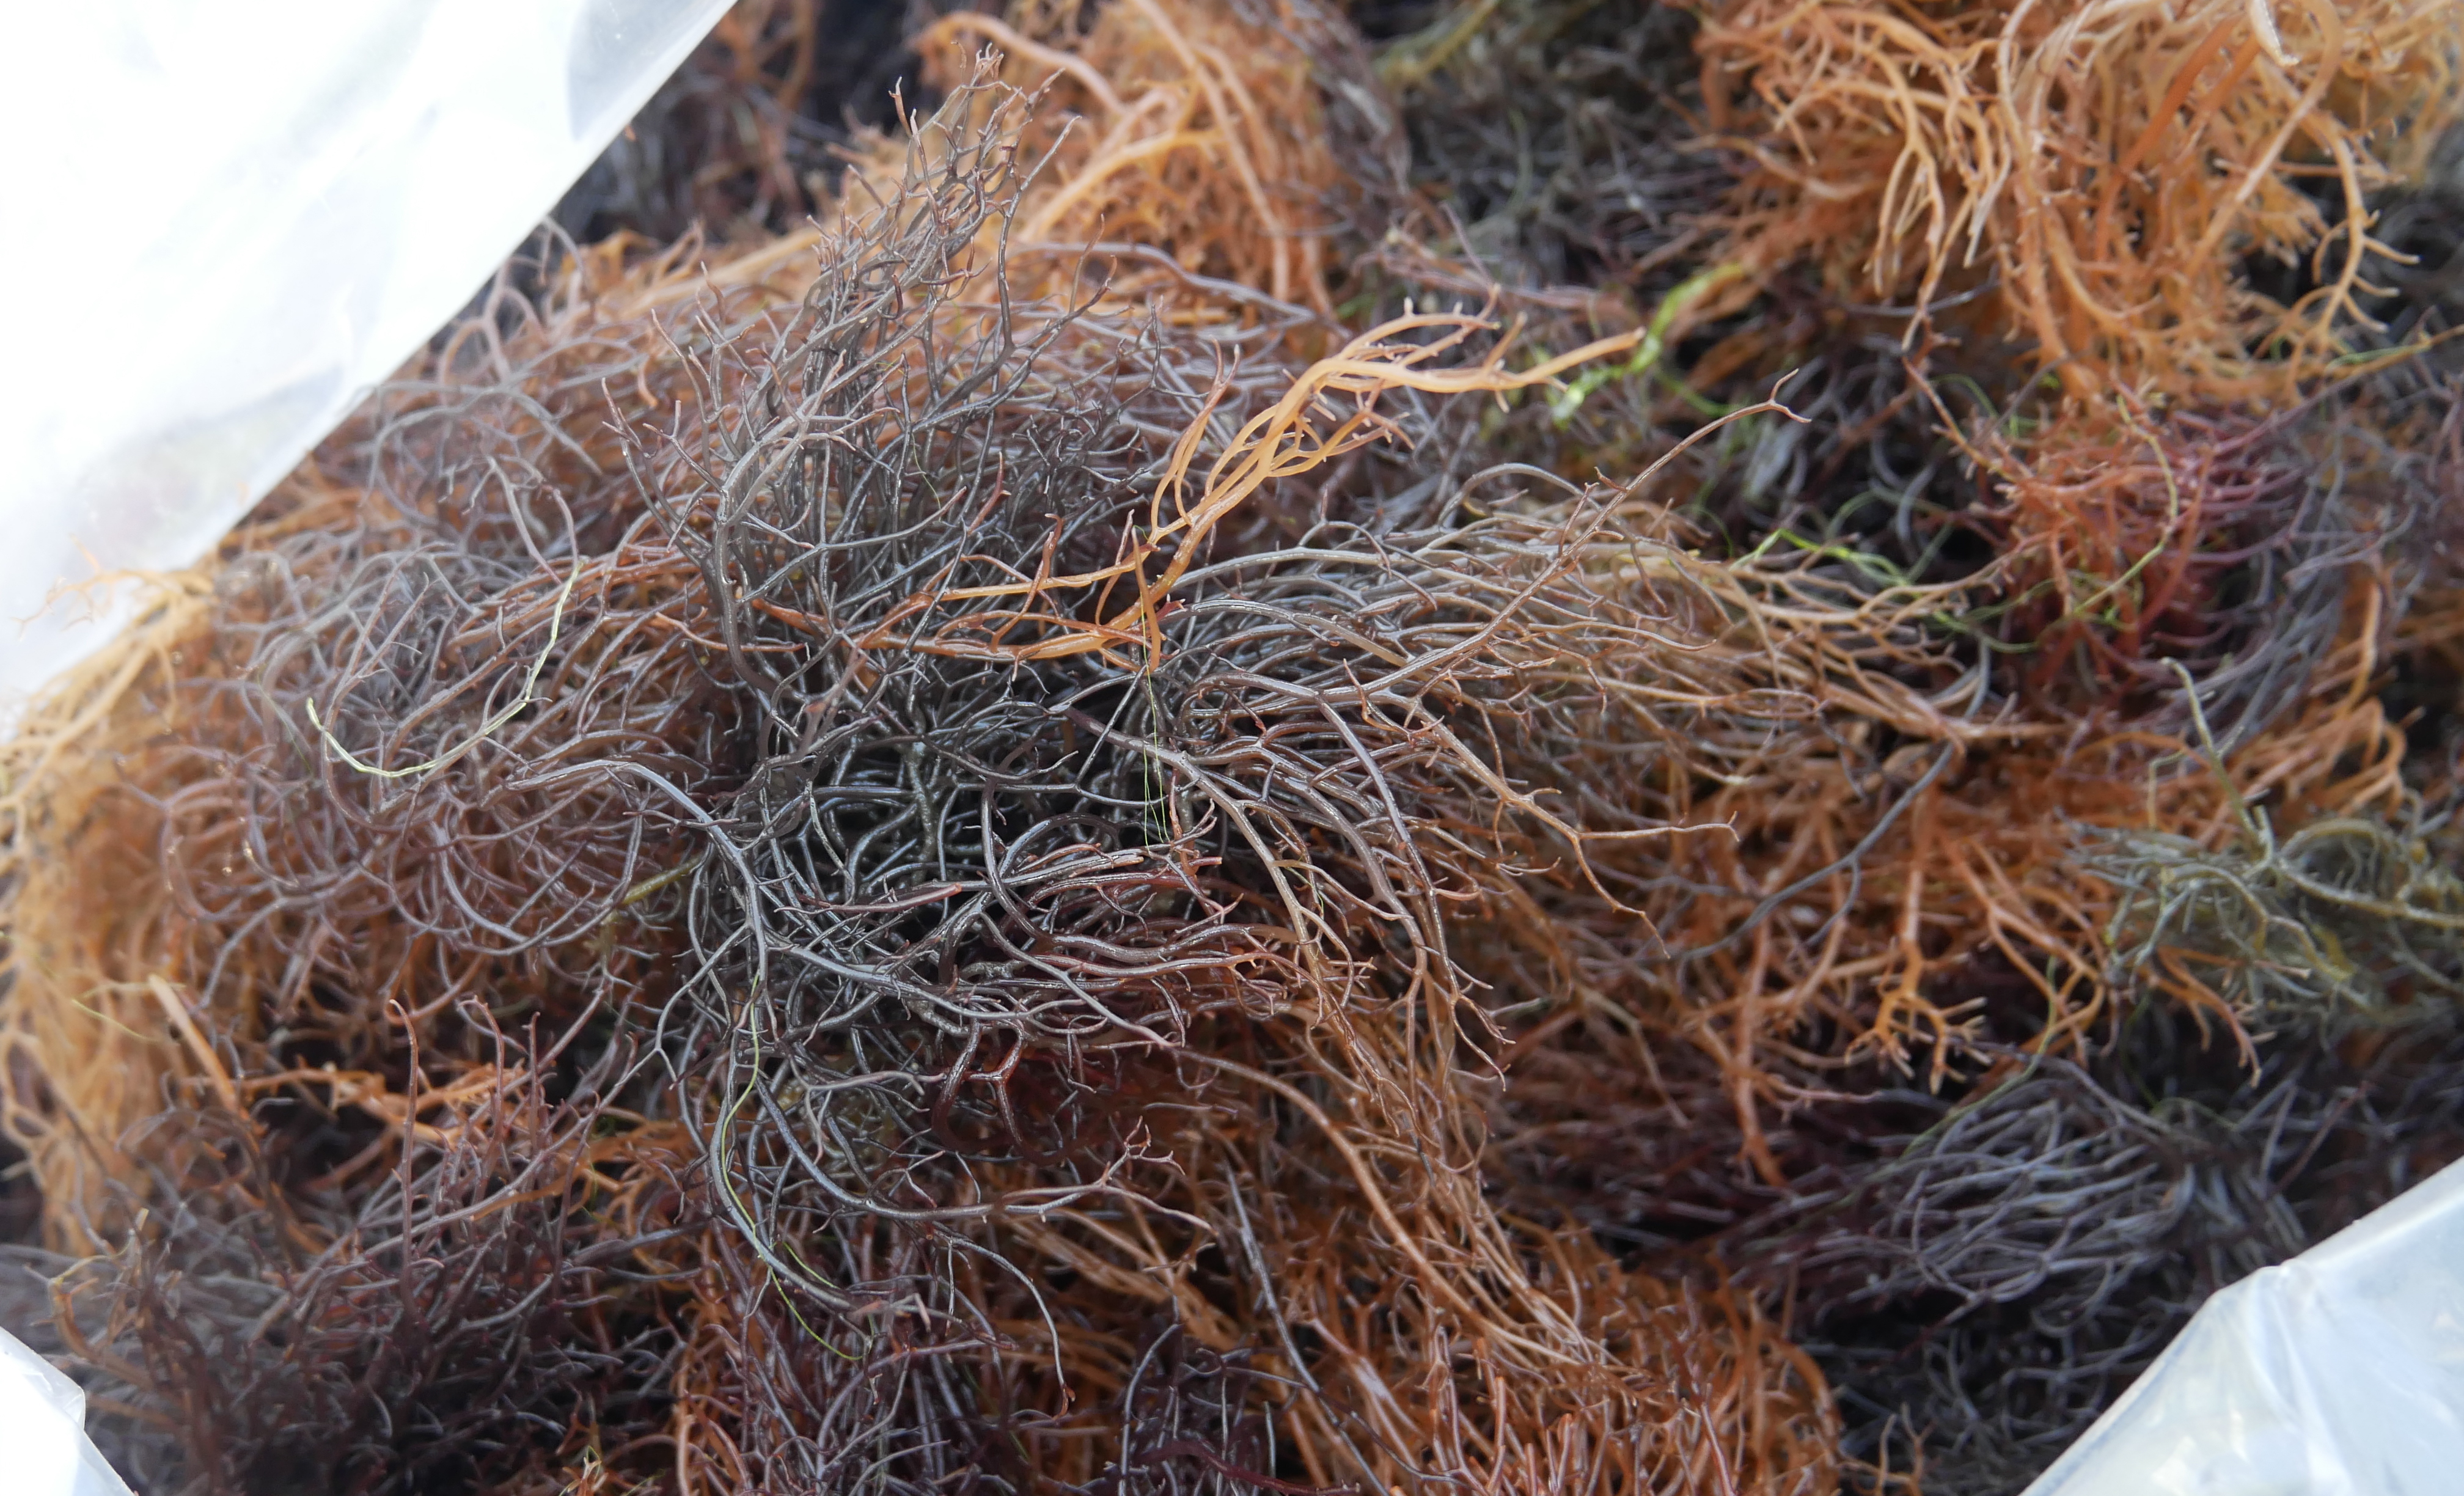 Gracilaria atau alga merah, salah satu jenis rumput laut yang dikembangkan produksinya oleh KKP sekaligus berfungsi penyerap karbon tinggi. Foto: DJPB KKP/Mongabay Indonesia